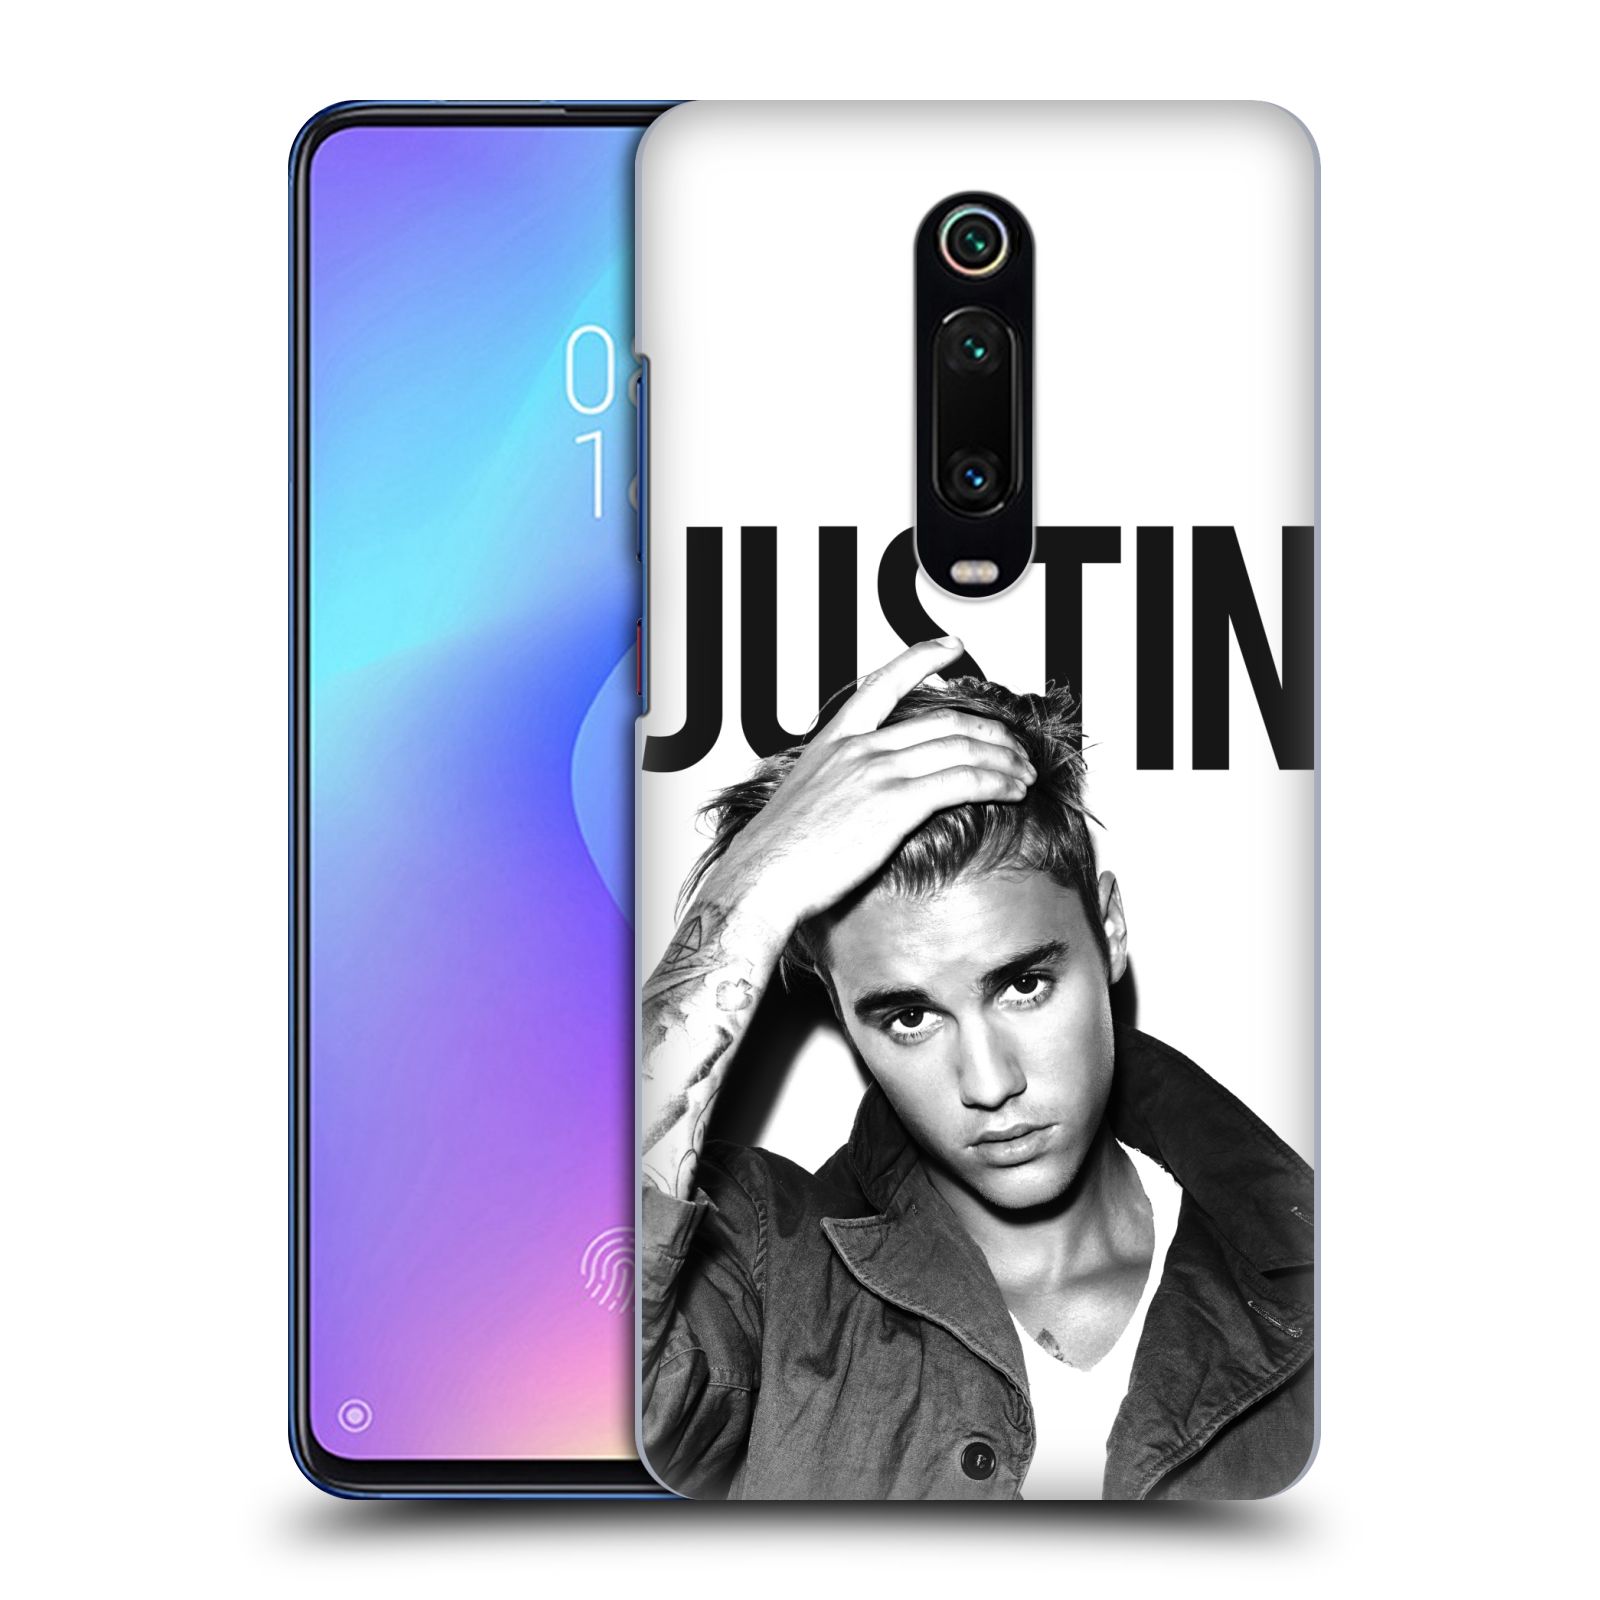 Pouzdro na mobil Xiaomi Mi 9T PRO - HEAD CASE - Justin Bieber foto Purpose černá a bílá